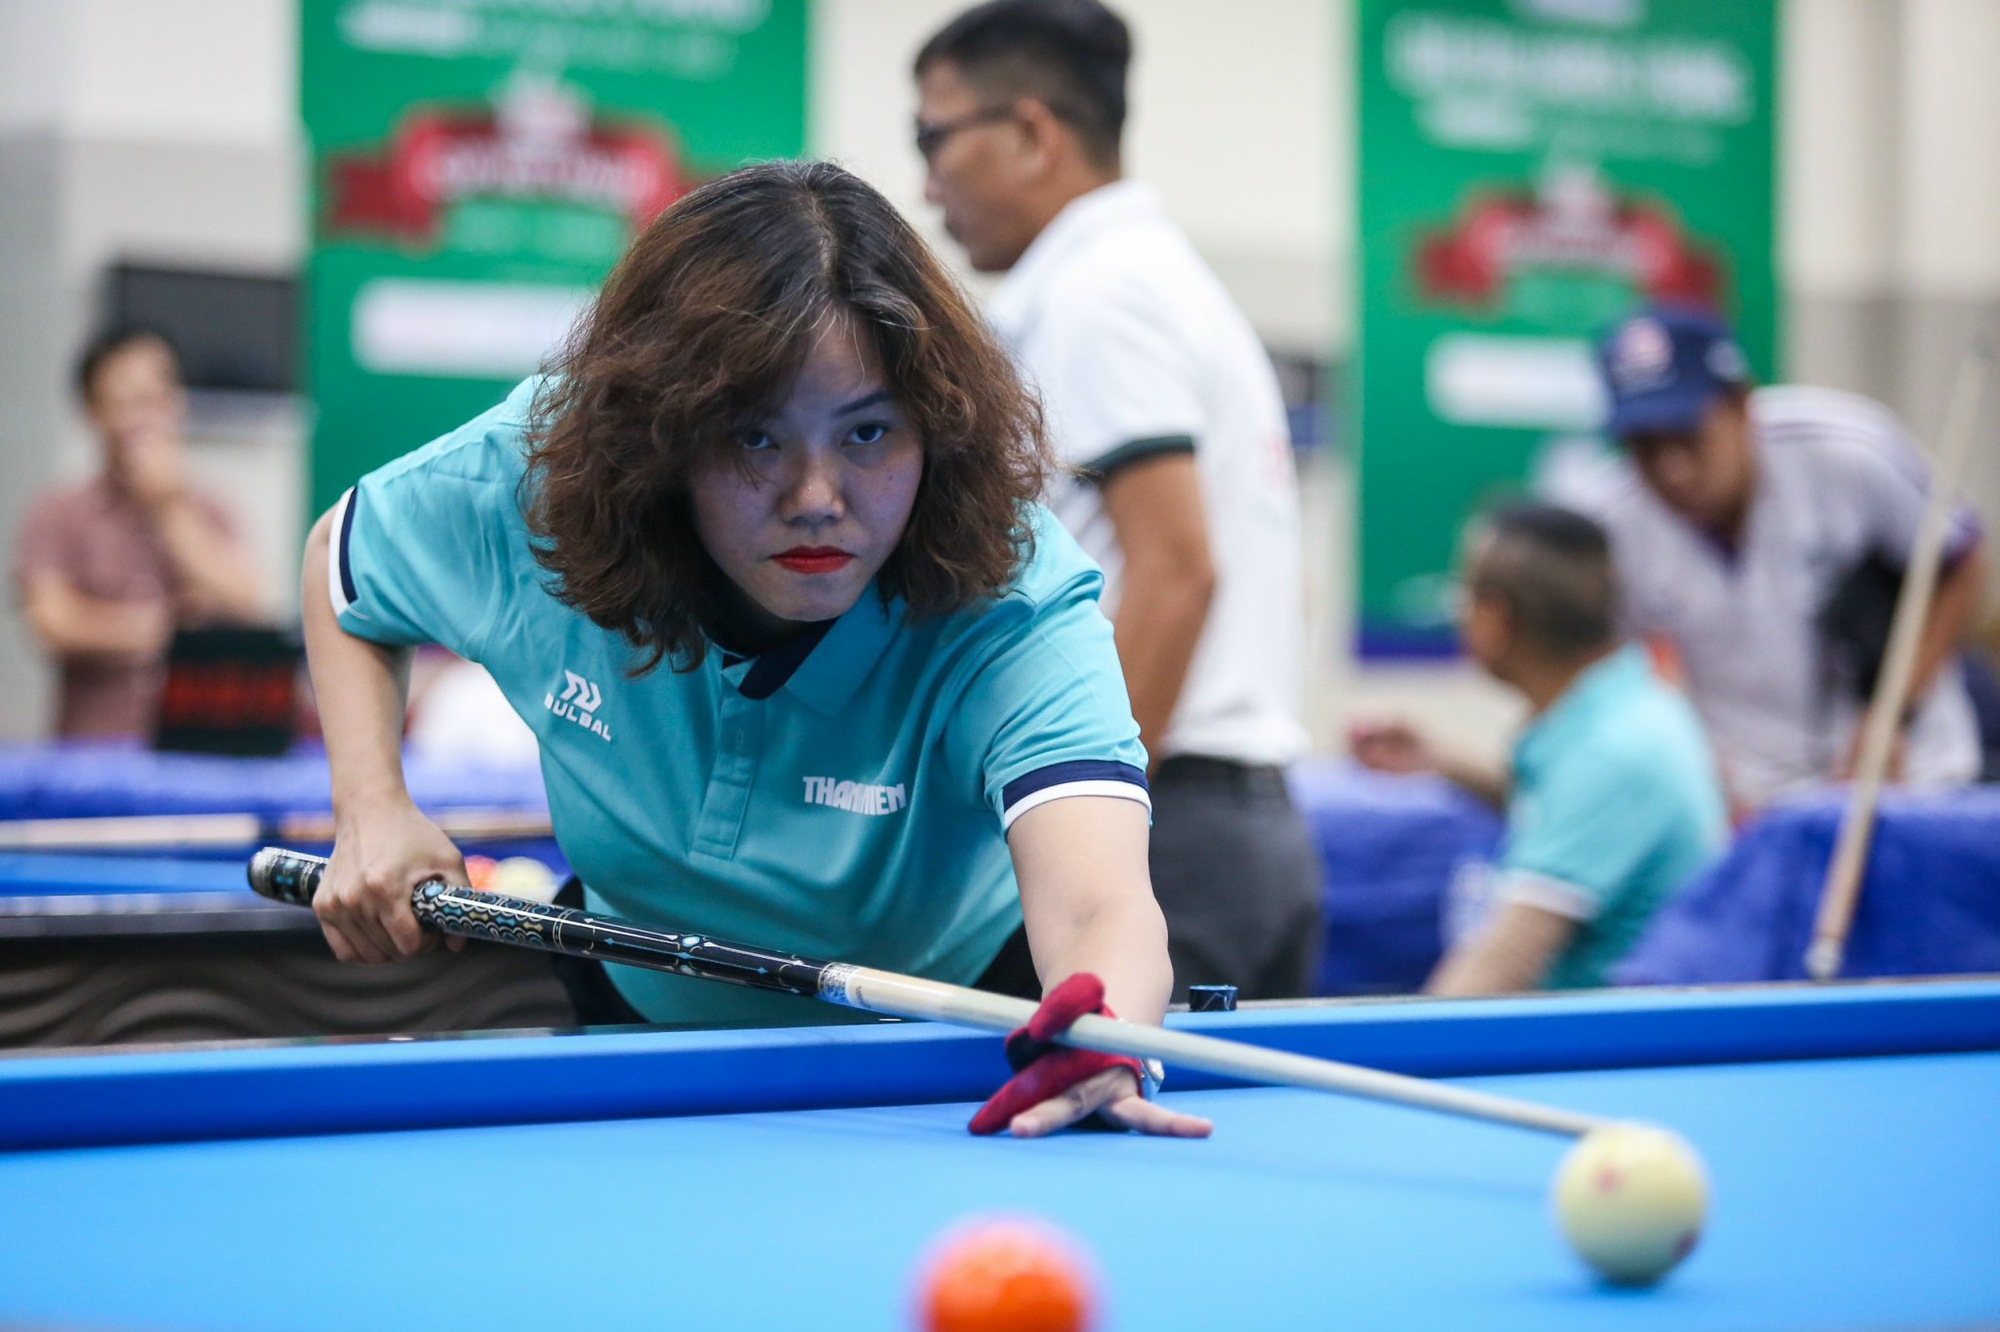 Những cơ thủ 'hot girl' gây ấn tượng ở giải billiards Thanh Niên mở rộng - Ảnh 10.